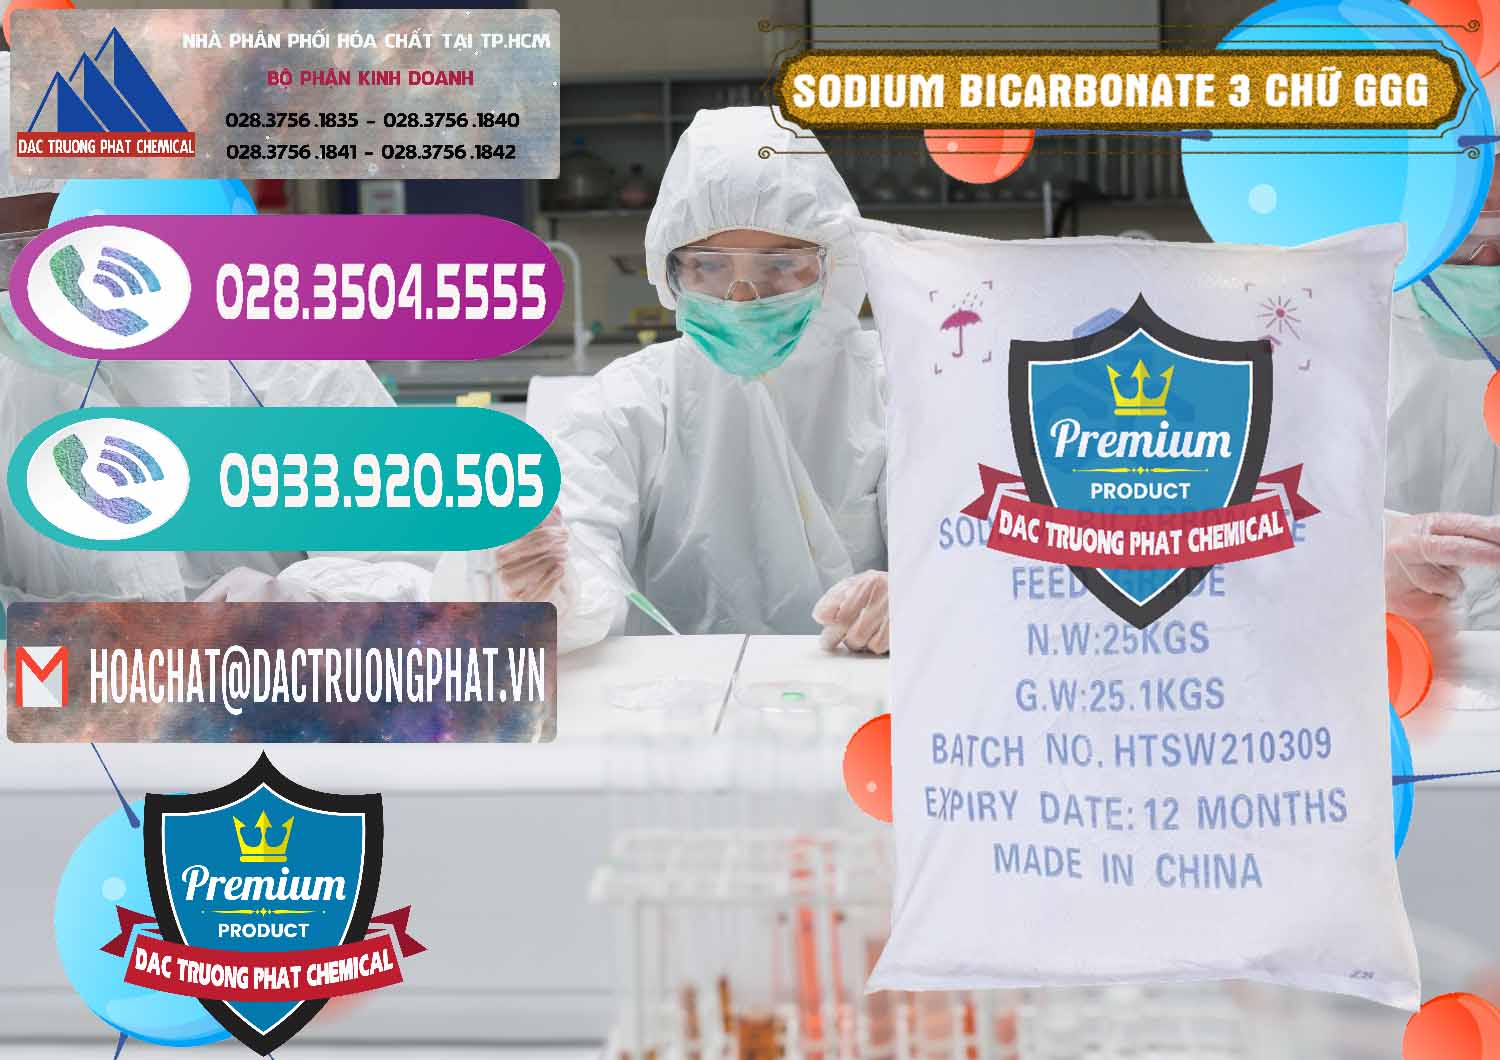 Nhập khẩu & bán Sodium Bicarbonate – Bicar NaHCO3 Food Grade 3 Chữ GGG Trung Quốc China - 0259 - Cung cấp và kinh doanh hóa chất tại TP.HCM - hoachatxulynuoc.com